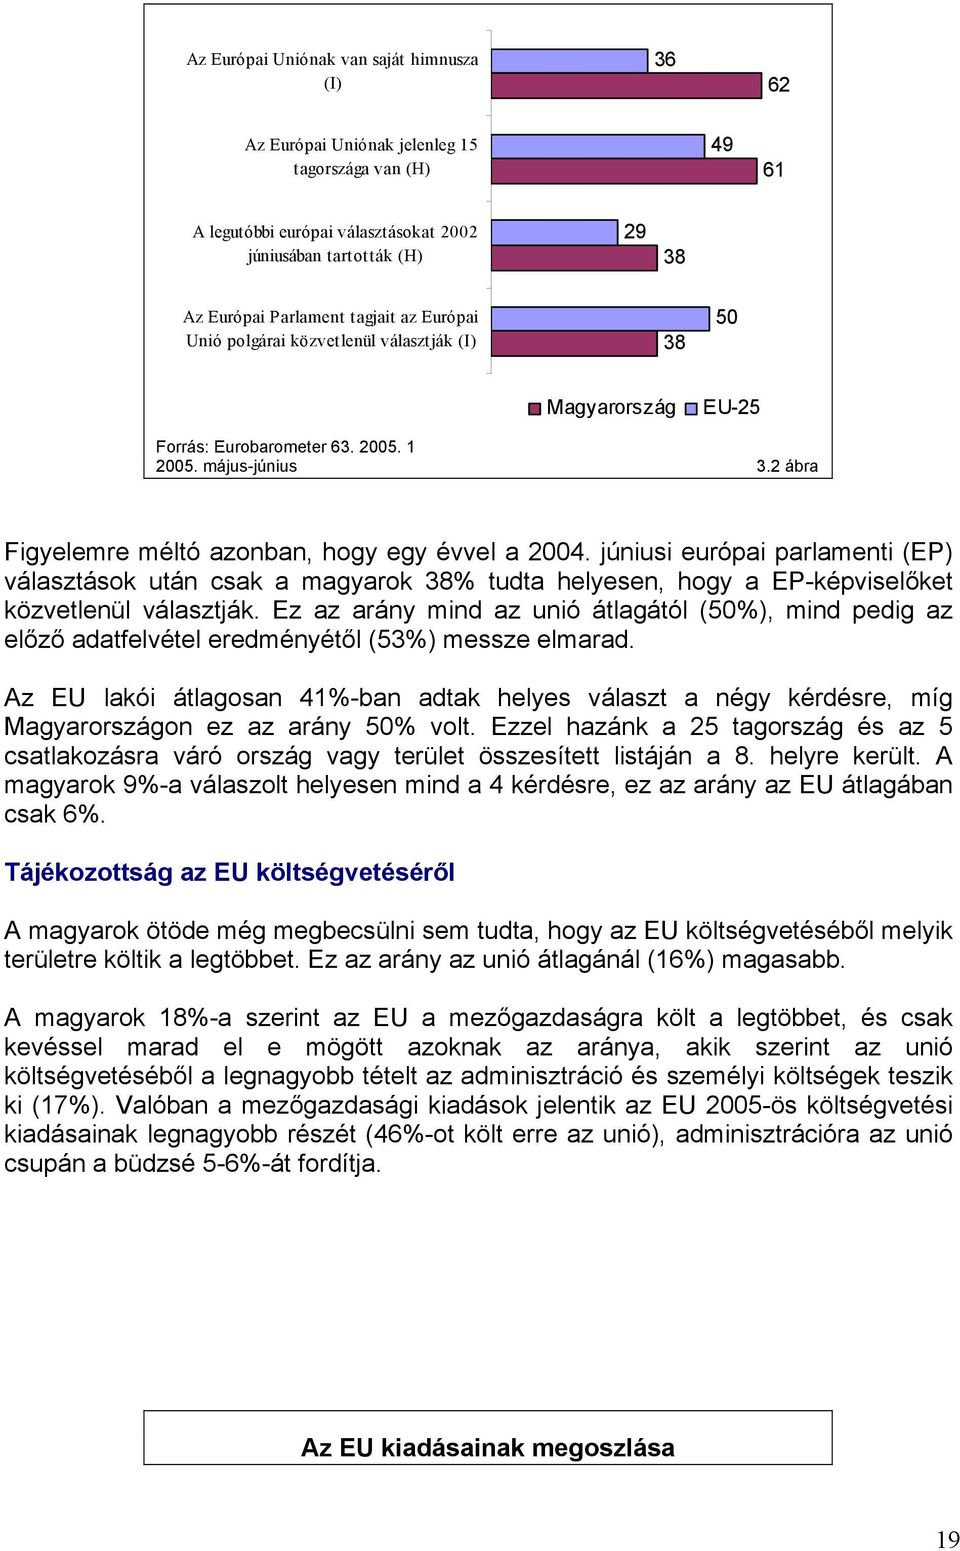 júniusi európai parlamenti (EP) választások után csak a magyarok 38% tudta helyesen, hogy a EP-képviselőket közvetlenül választják.